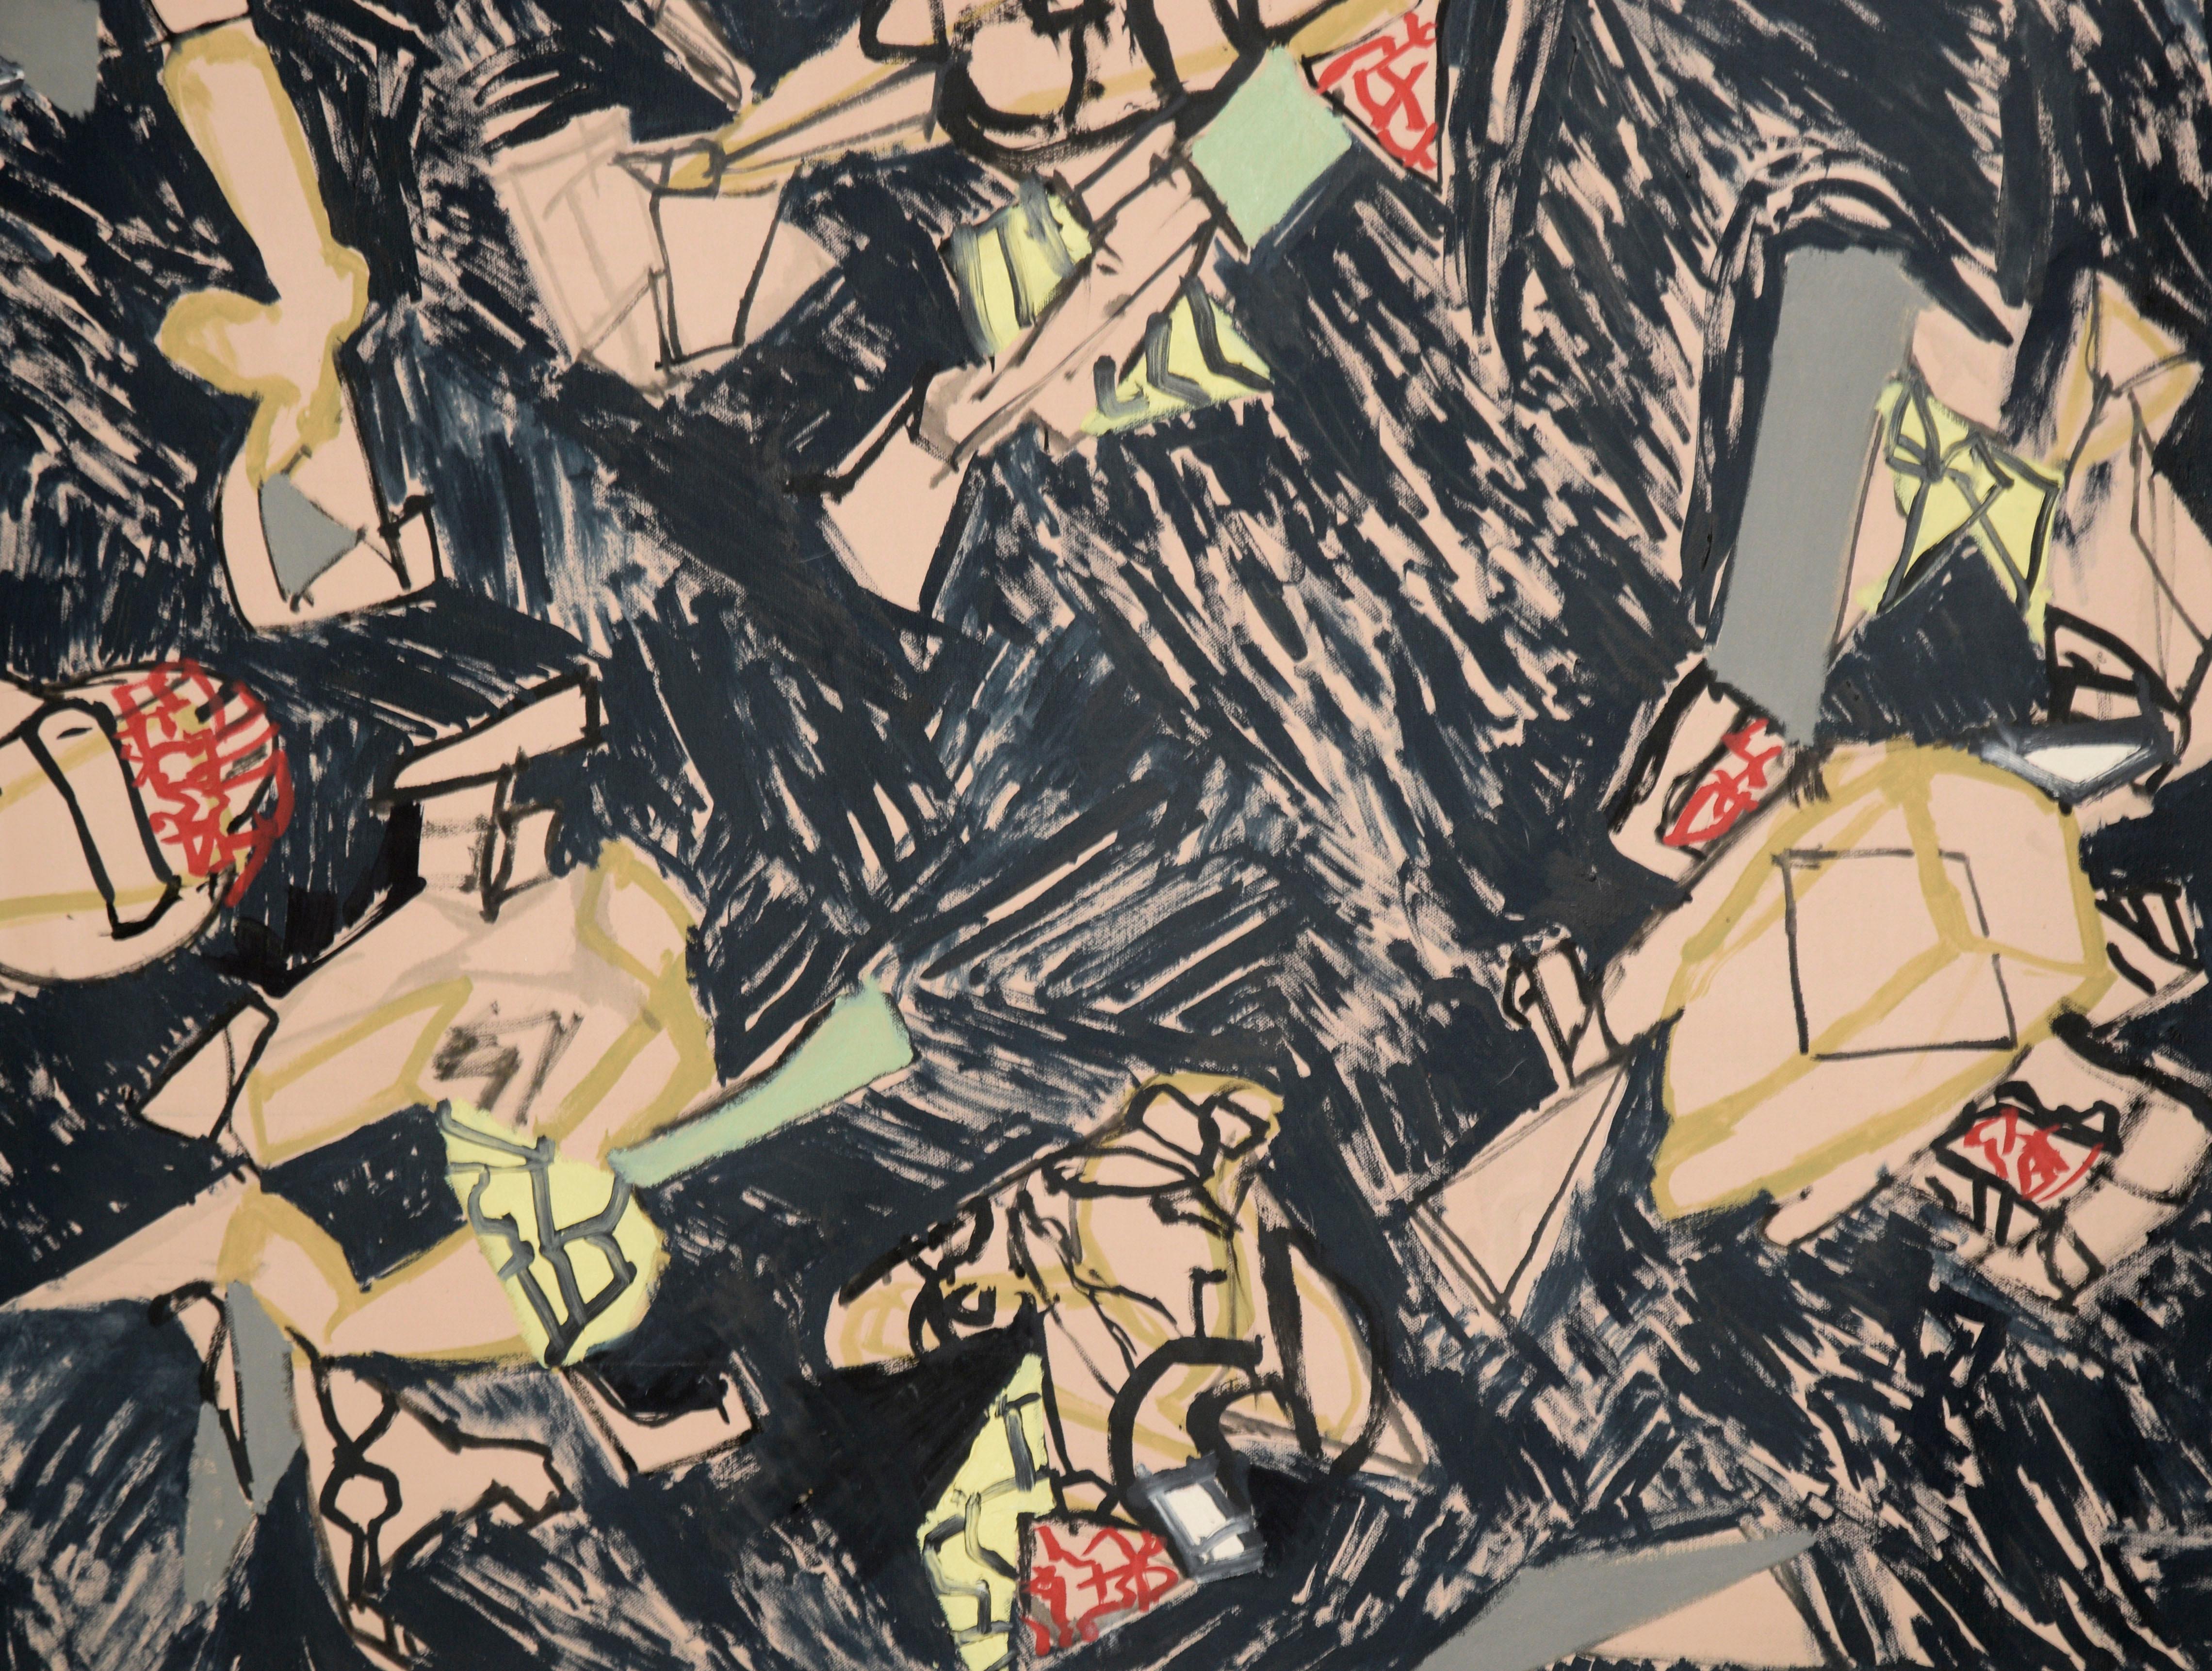  Peinture géométrique abstraite contemporaine à grande échelle sur toile de l'artiste de la Bay Area Michael Pauker (américain, né en 1957), 2011. Des formes géométriques détaillées, qui ressemblent à des constructions ou à des modèles fantastiques